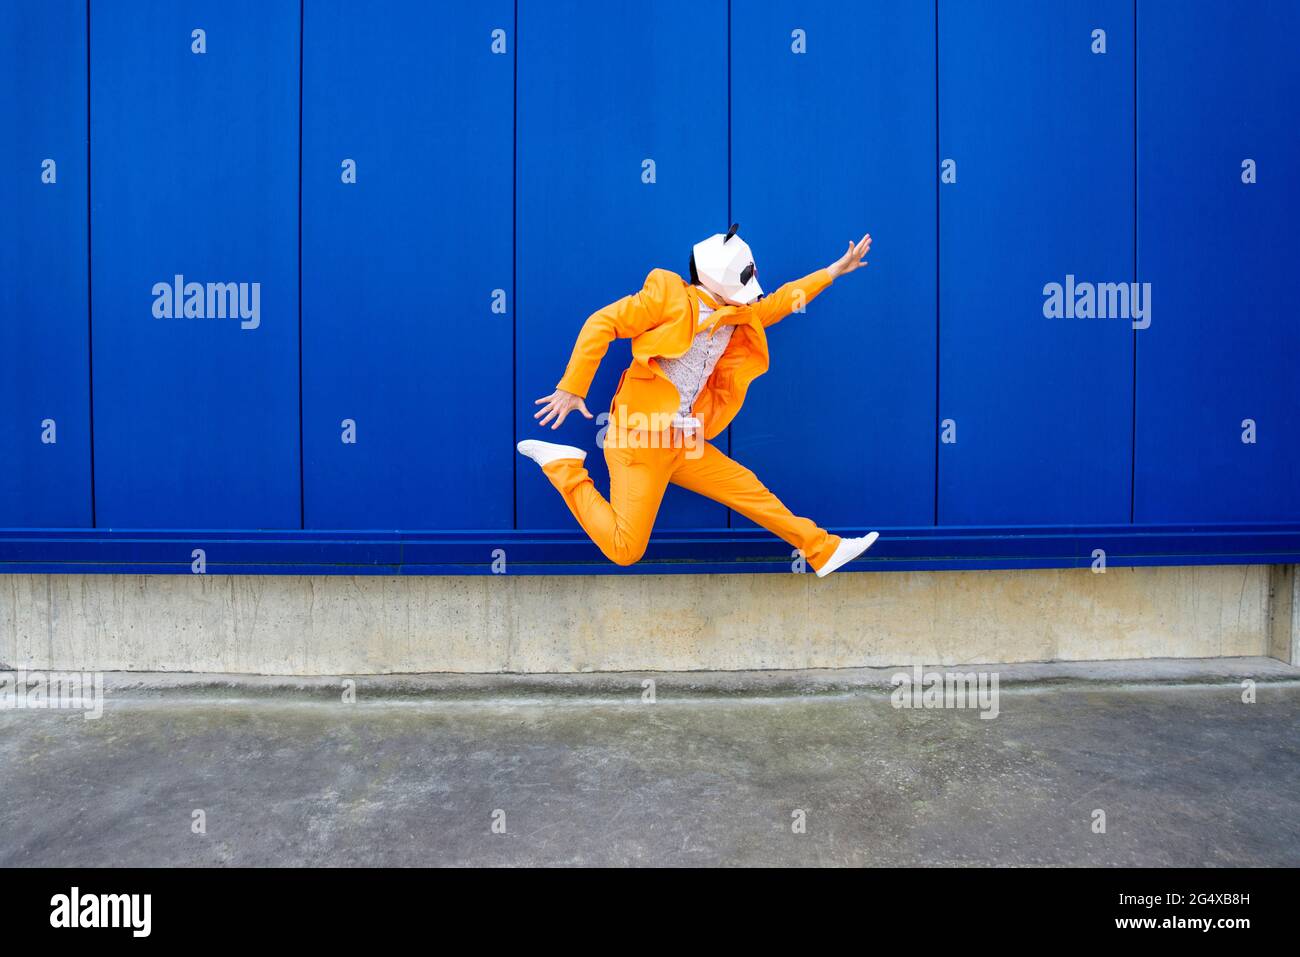 Homme portant un costume orange vif et un masque de panda sautant contre le mur bleu Banque D'Images